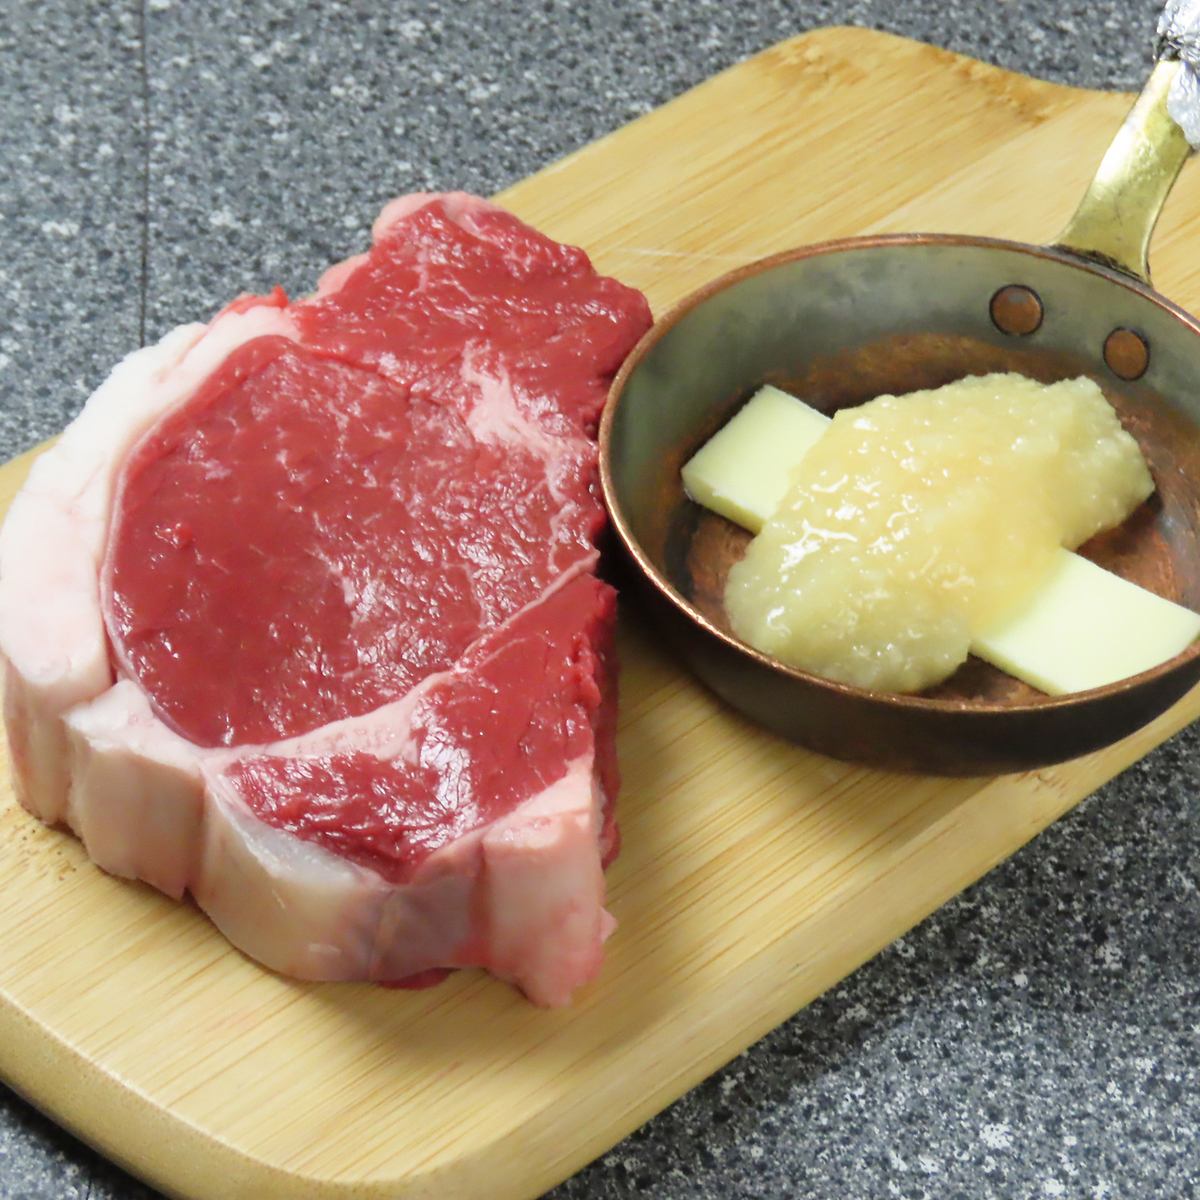 菲力牛排、烤肋排等优质肉类搭配旭川产酒。